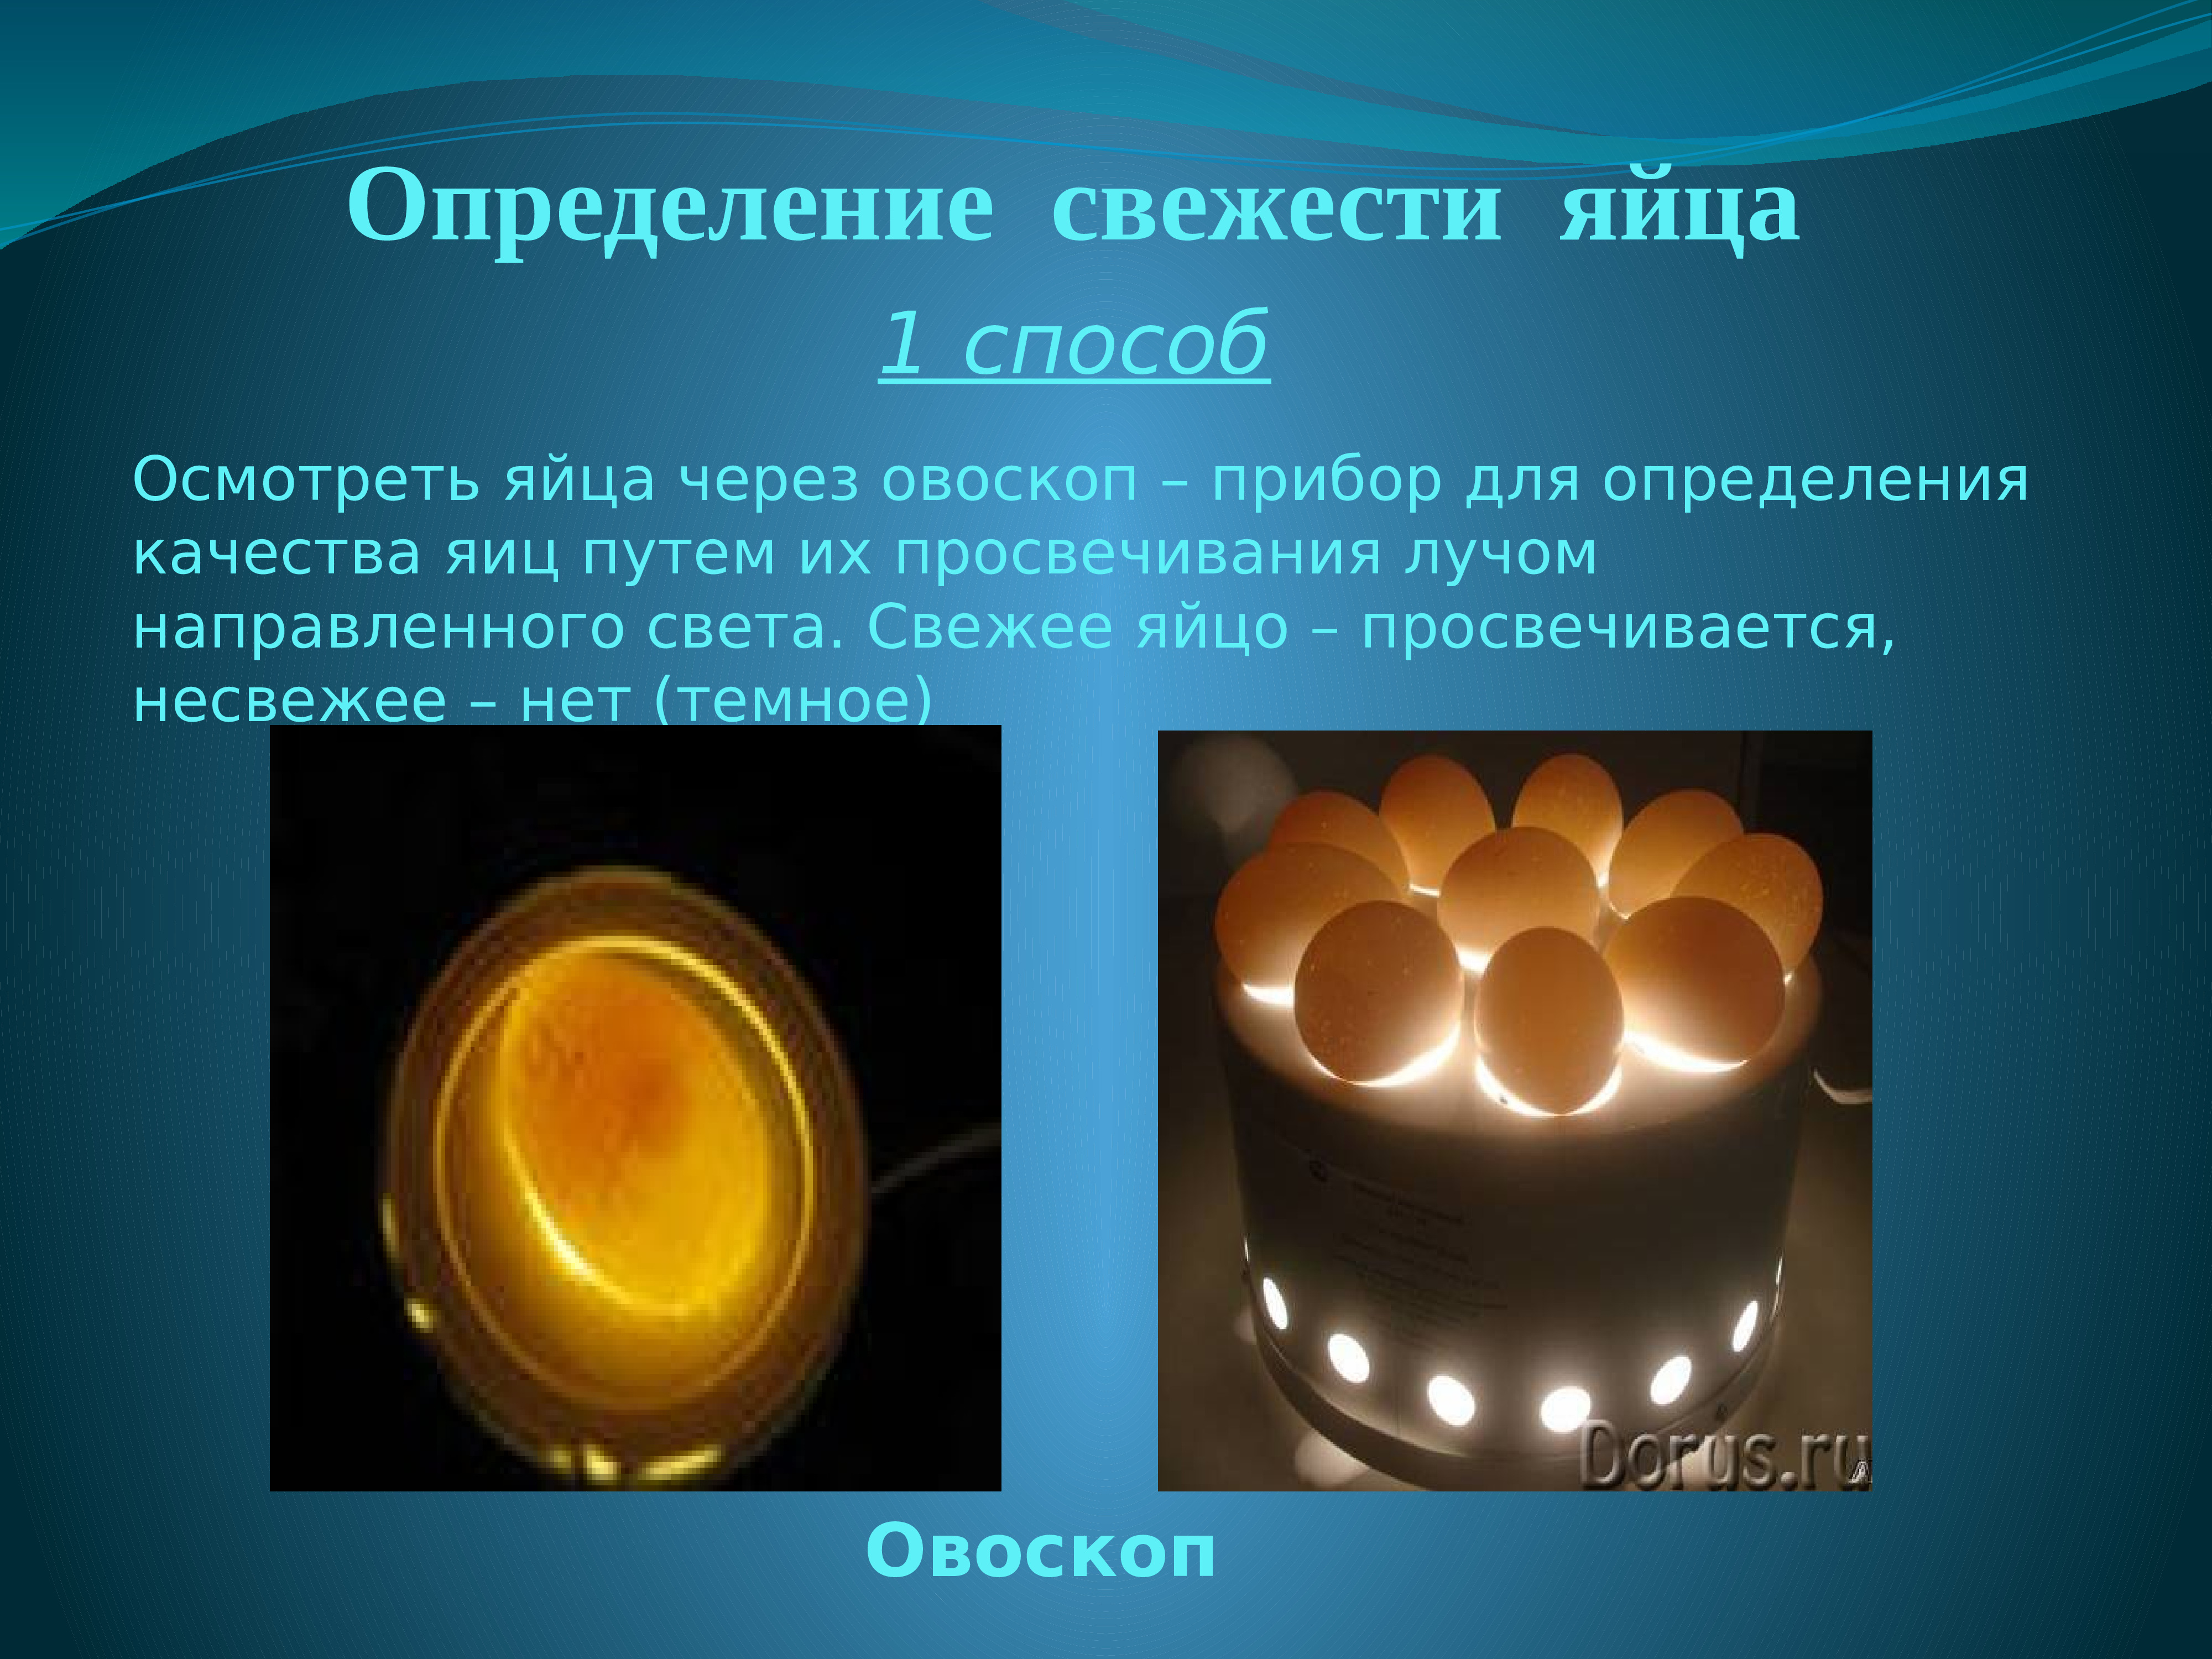 Определение свежести яиц